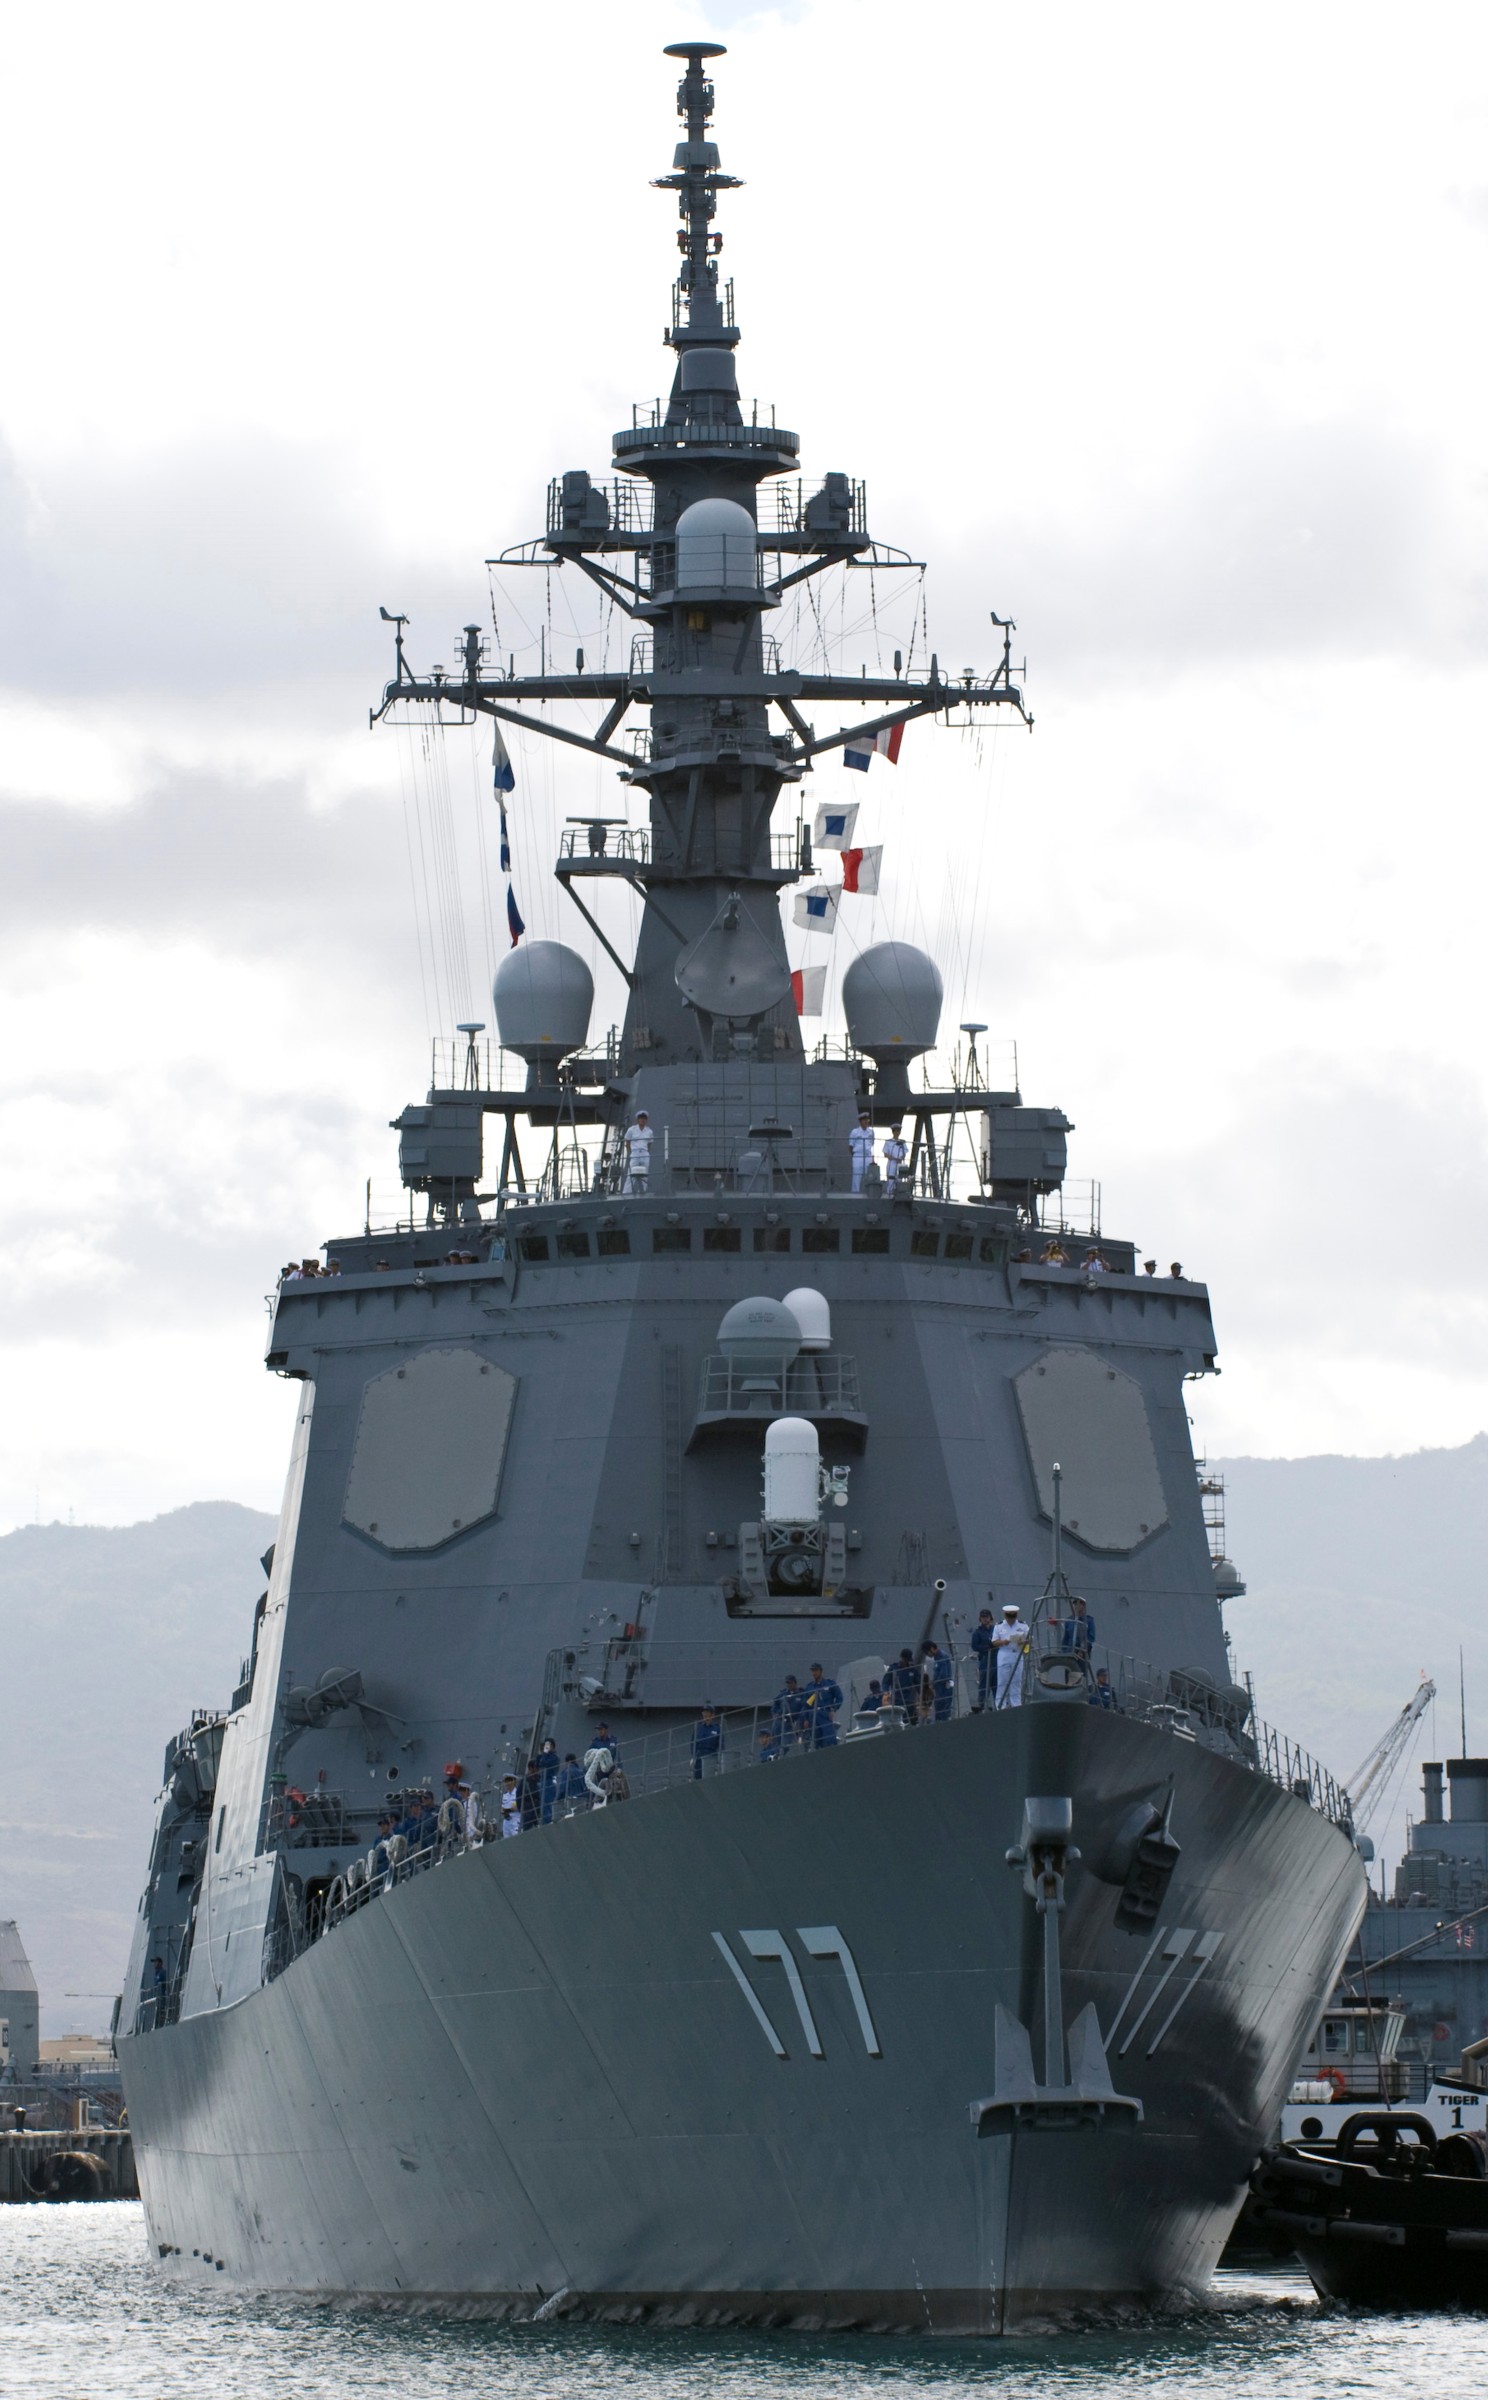 ddg-177 jds atago guided missile destroyer japan maritime self defense force jmsdf 24